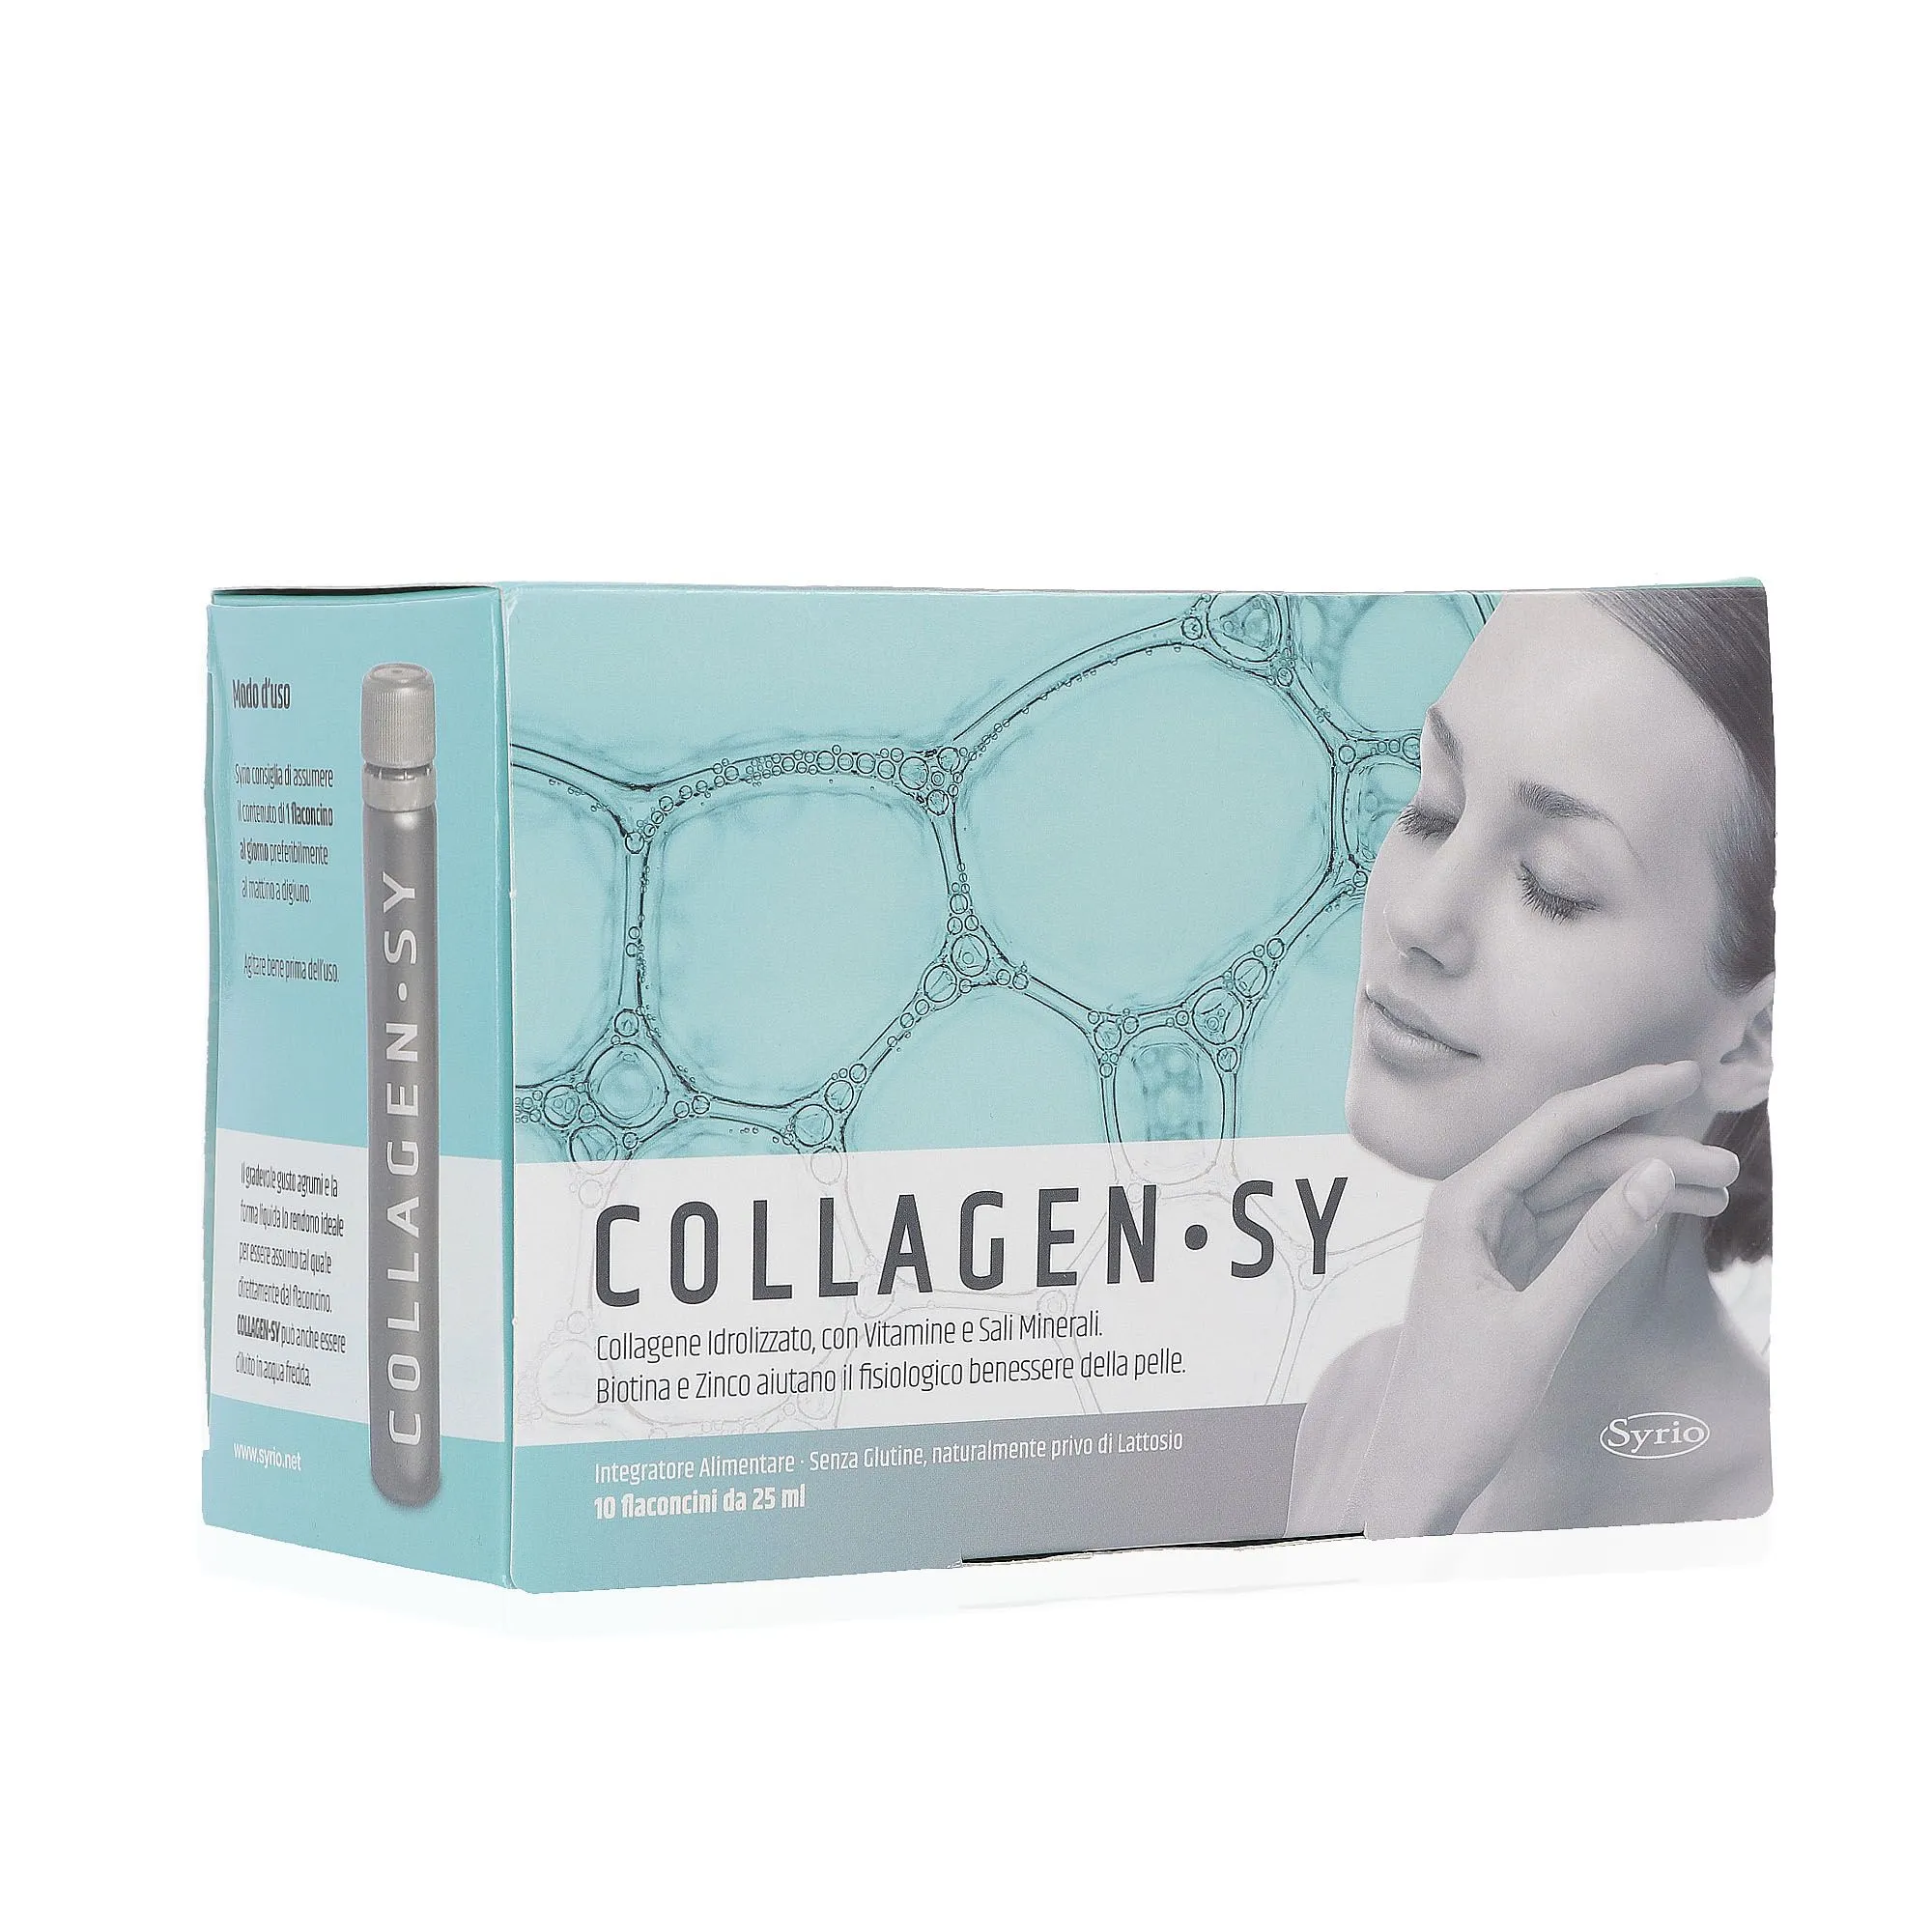 Collagen-Sy integratore alimentare (10 flaconi)